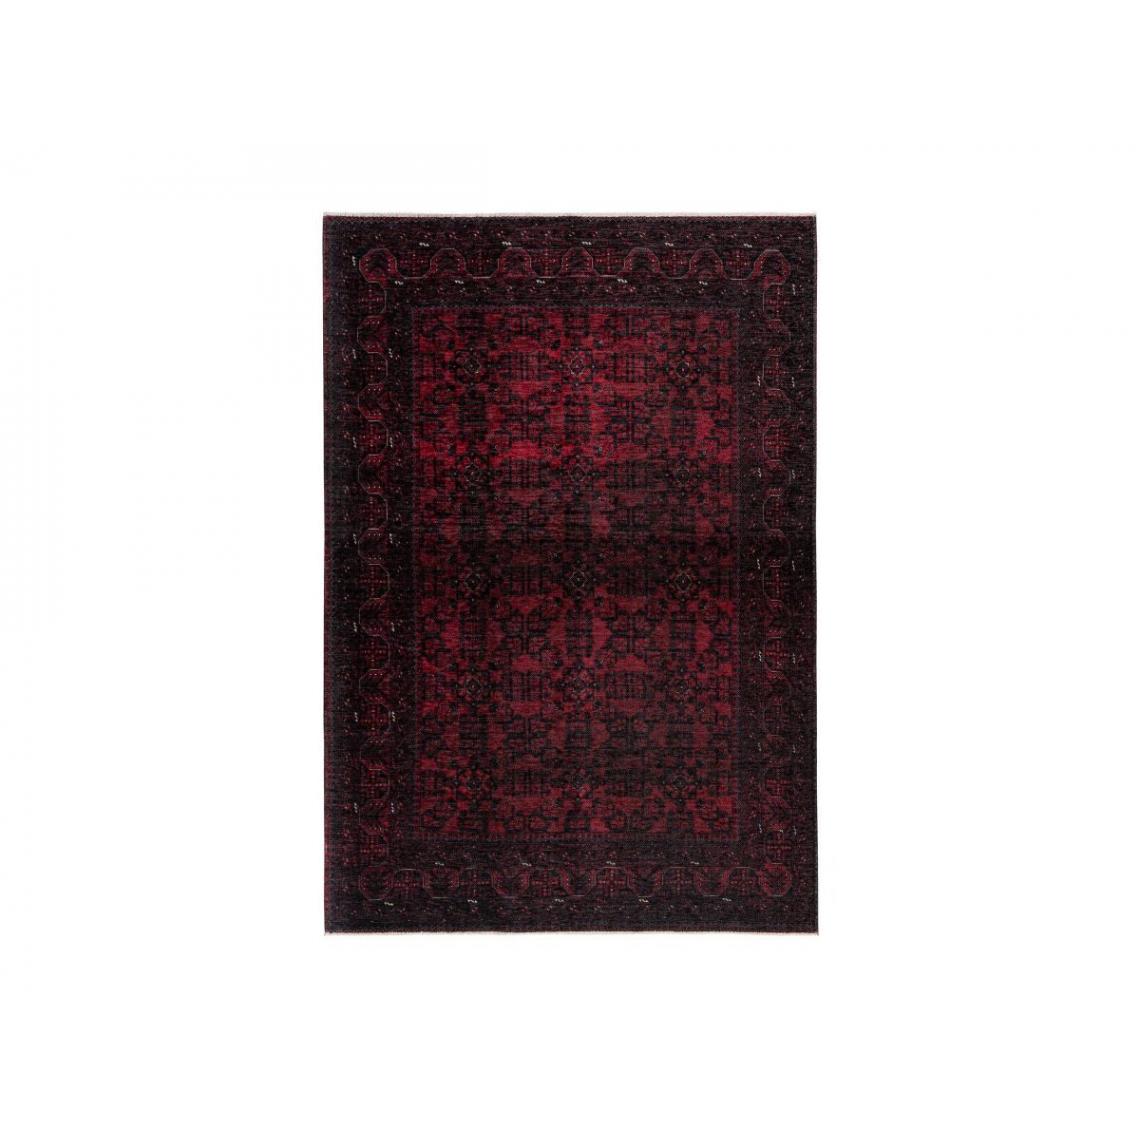 Bobochic - BOBOCHIC Tapis poil court rectangulaire RUBIS motif graphique Rouge 80x150 - Tapis